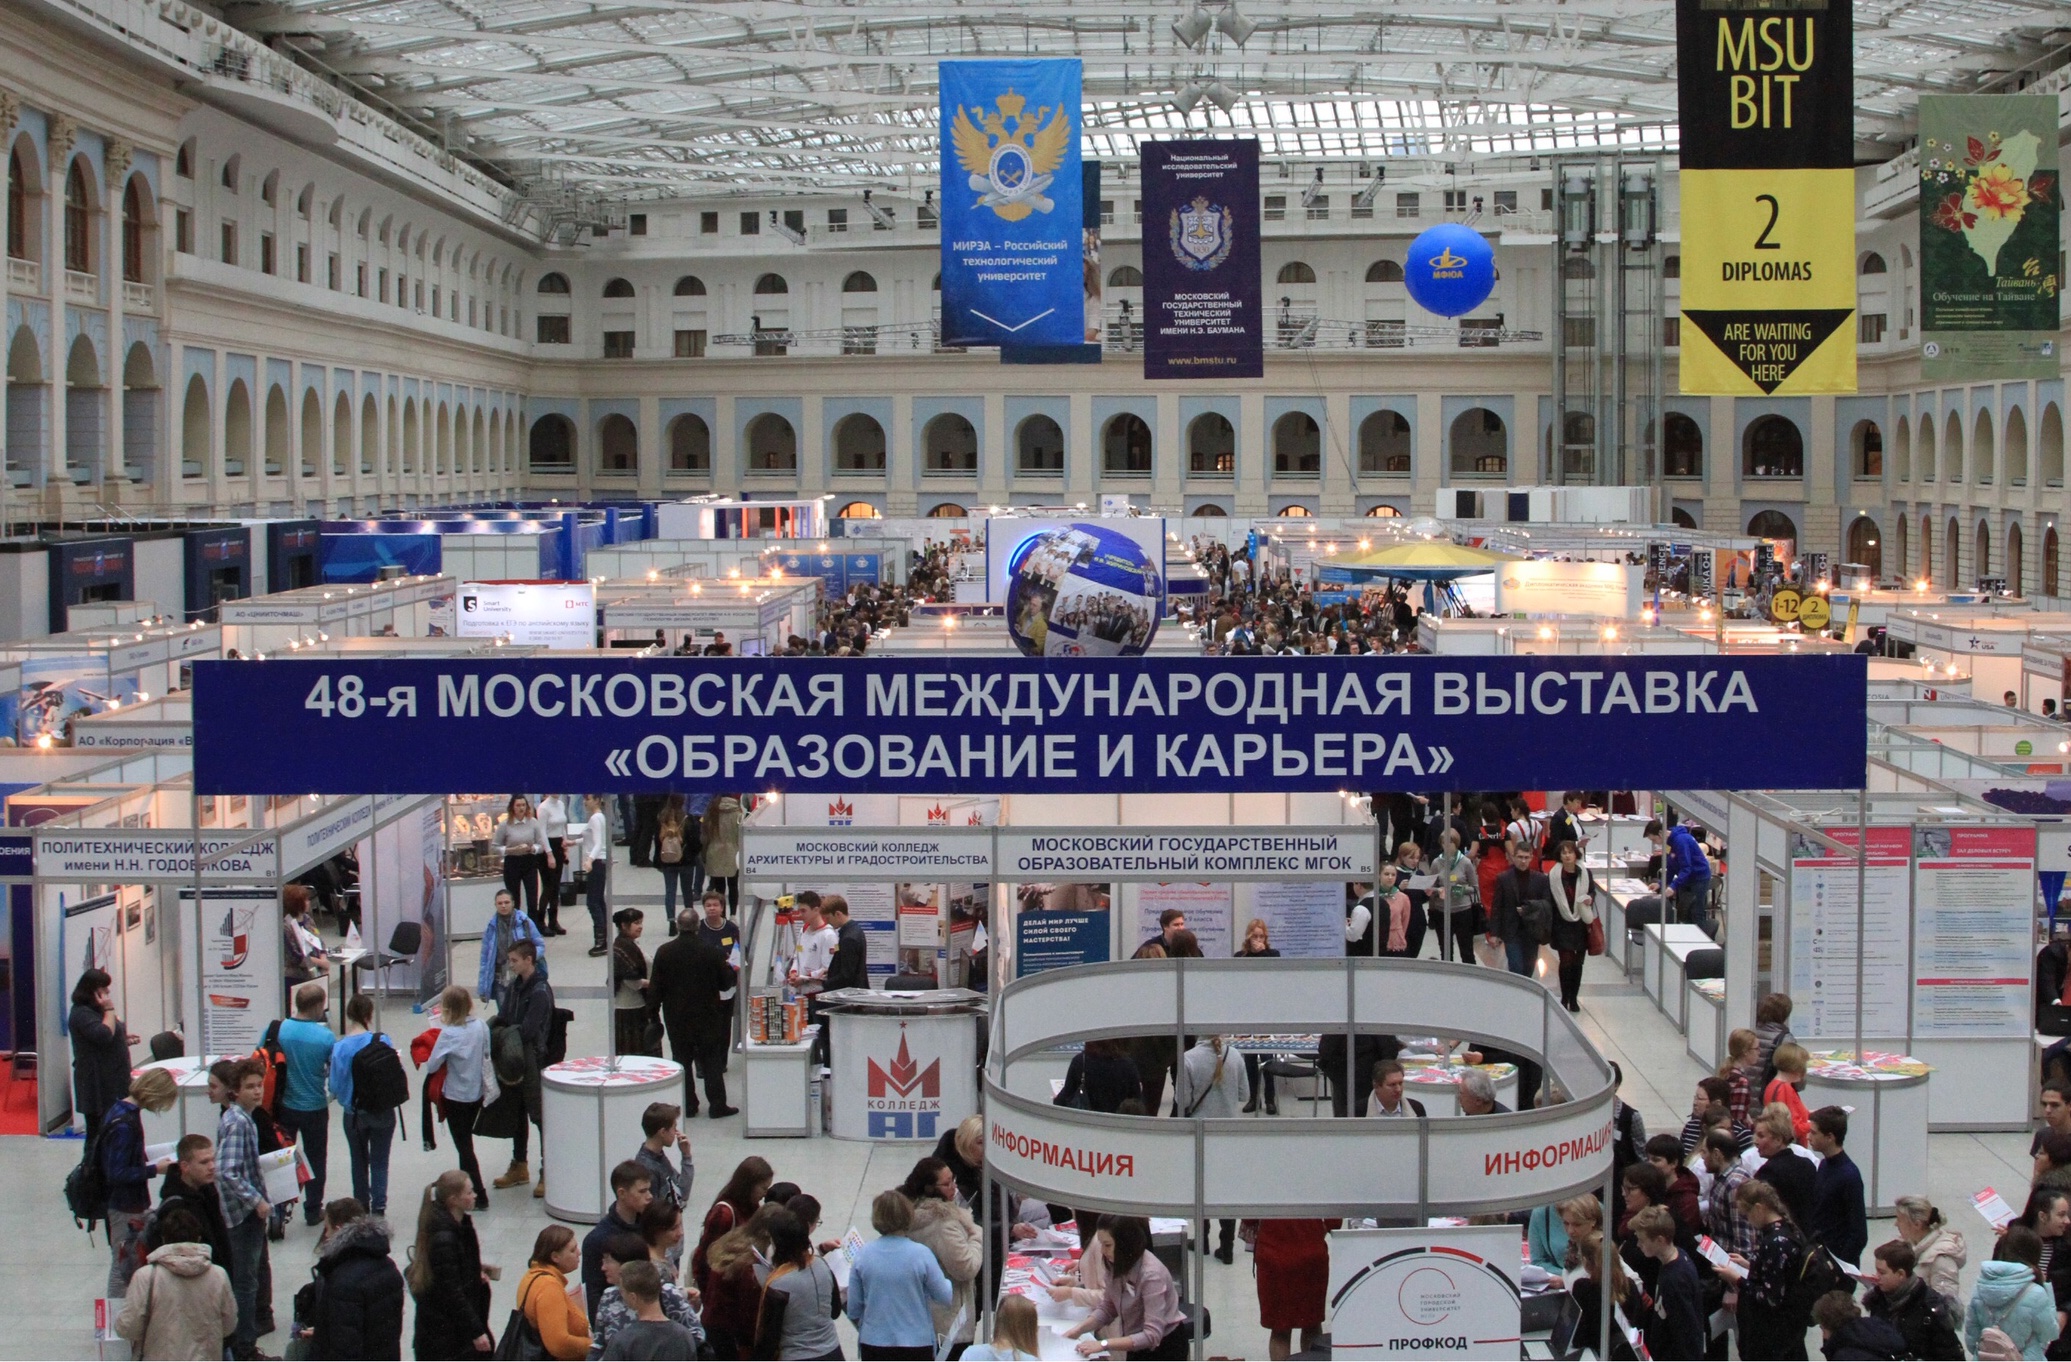 Участие в 48-й Московской международной выставке "Образование и карьера"